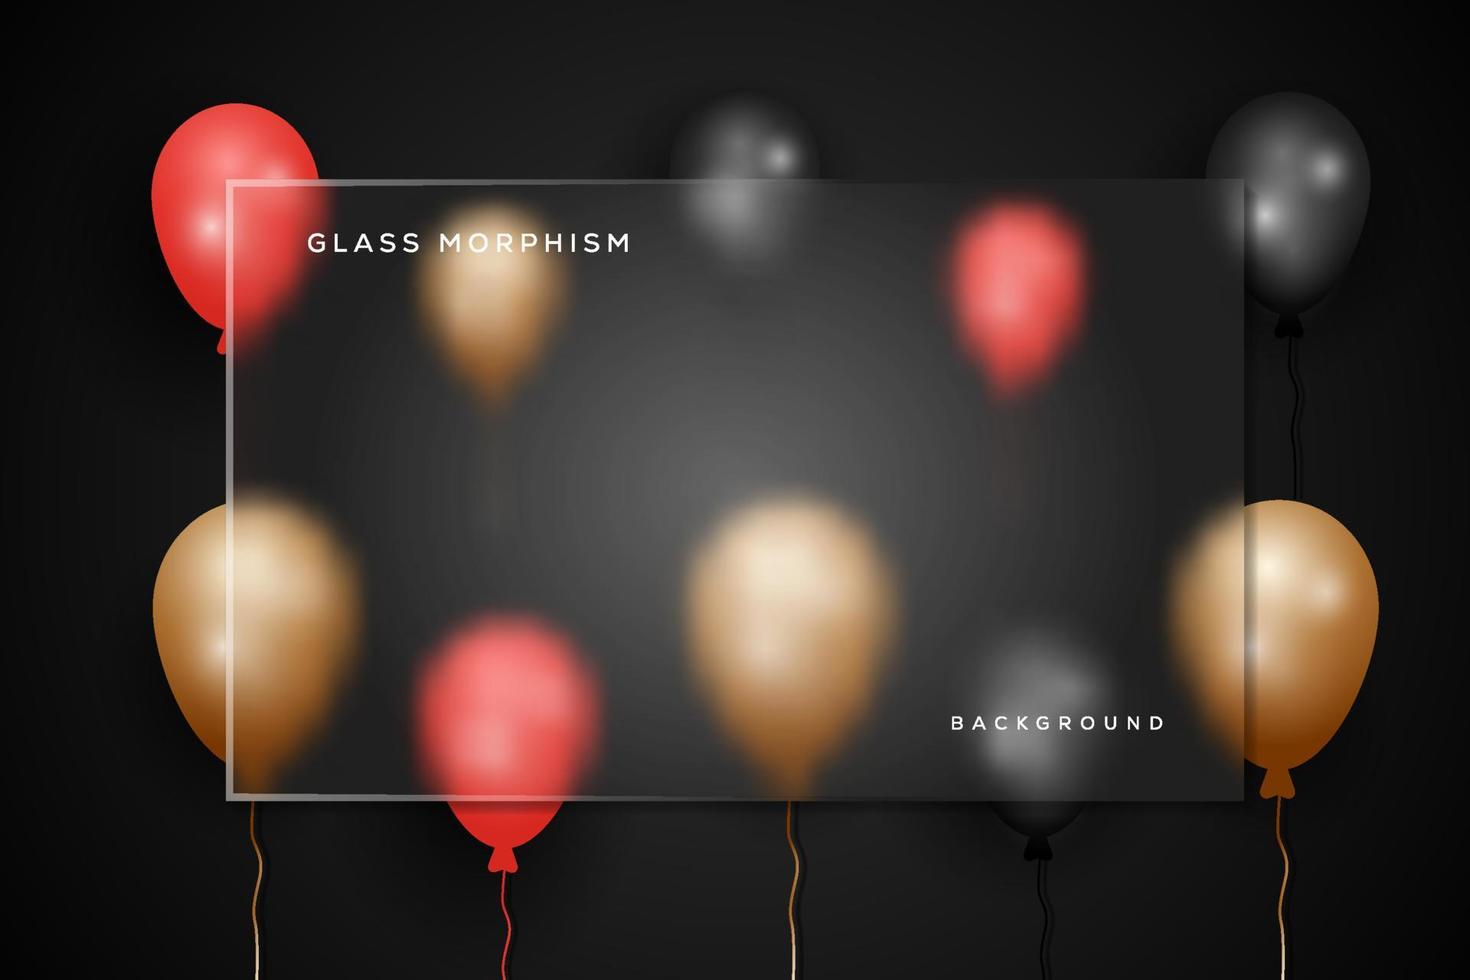 glas morfism illustration med helium ballong bakgrund vektor